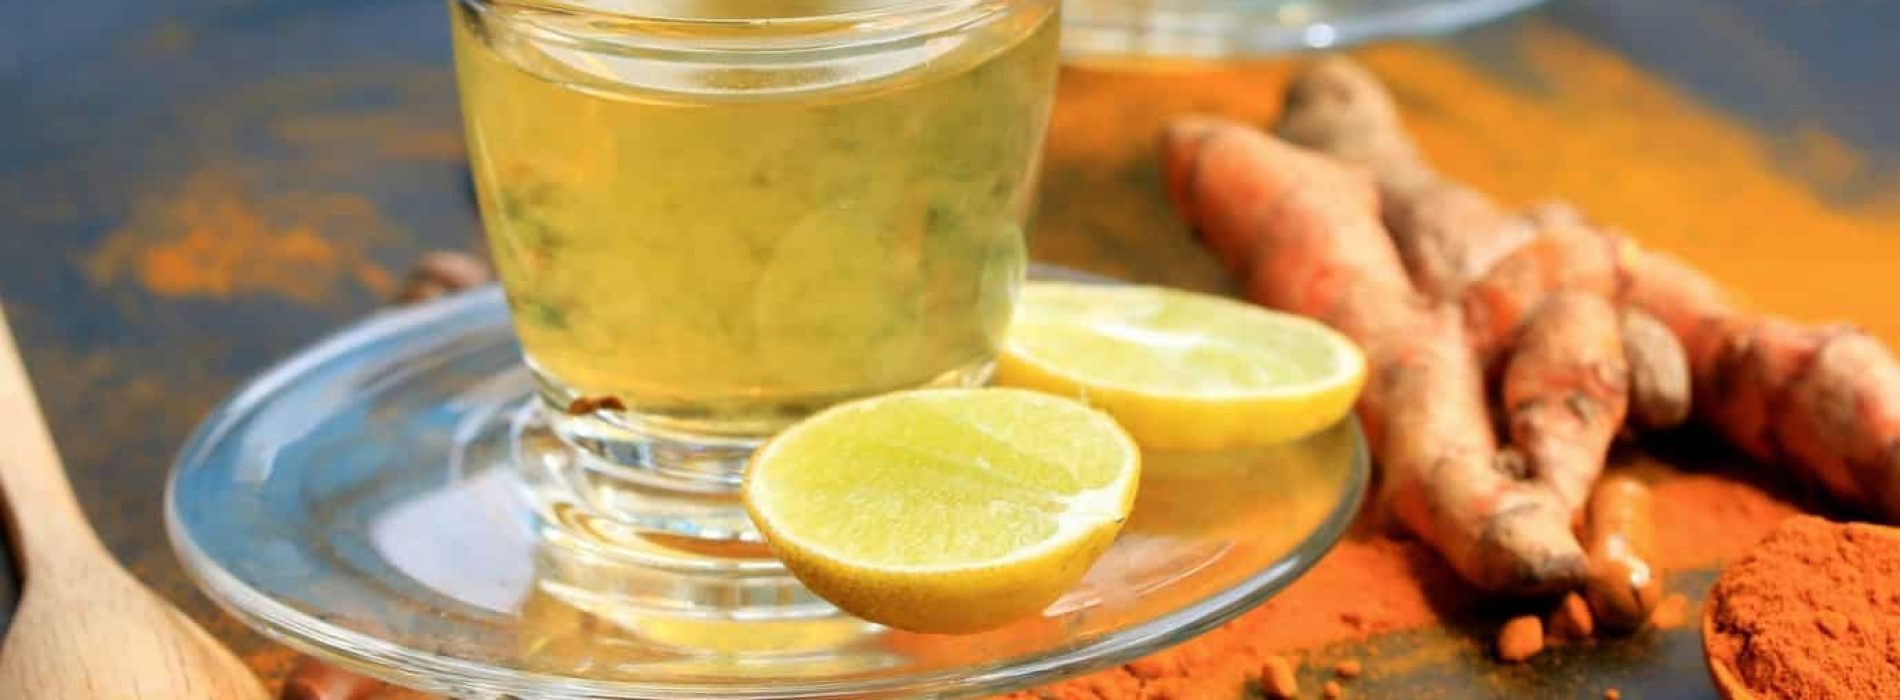 De wetenschap legt uit wat er met je lichaam gebeurt als je elke dag citroenwater met kurkuma drinkt